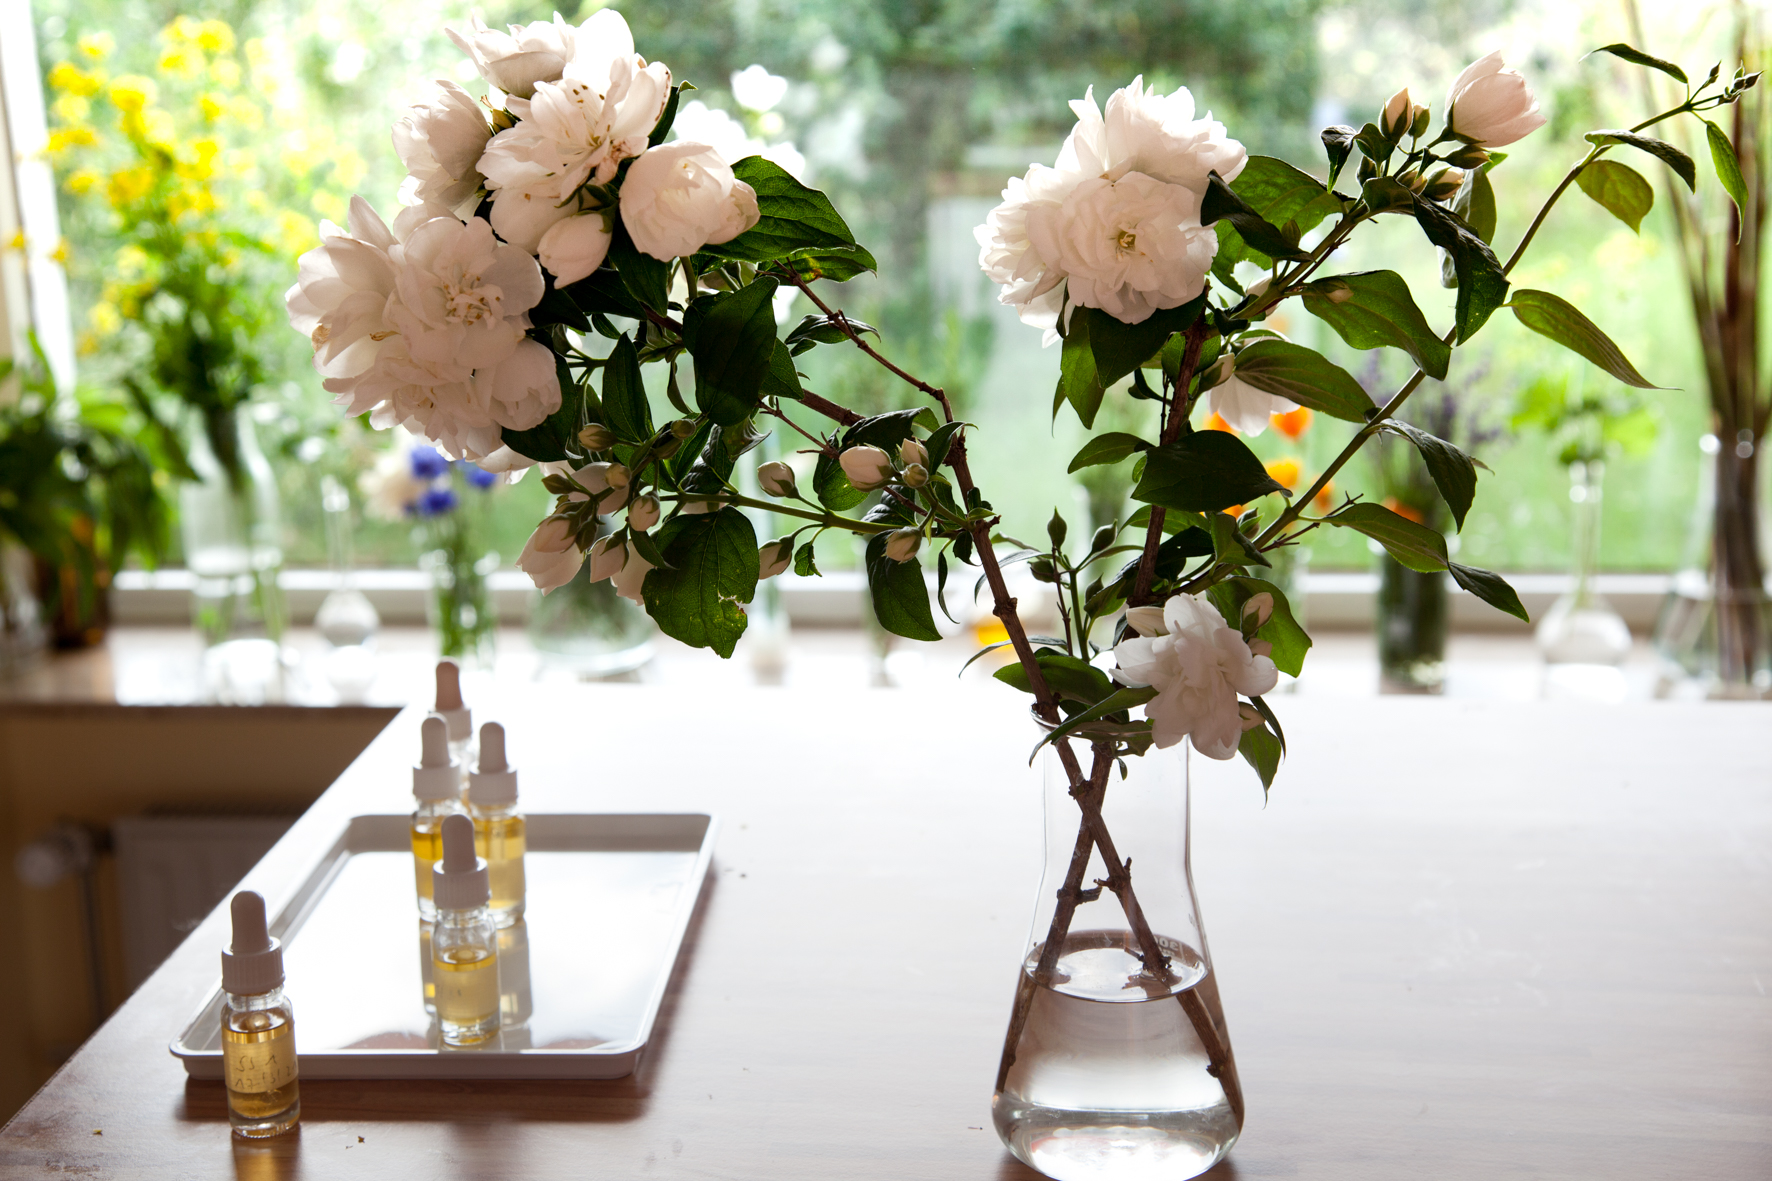 Blumenstrauss und kostbare Seren zur Hautpflege auf einem Tisch